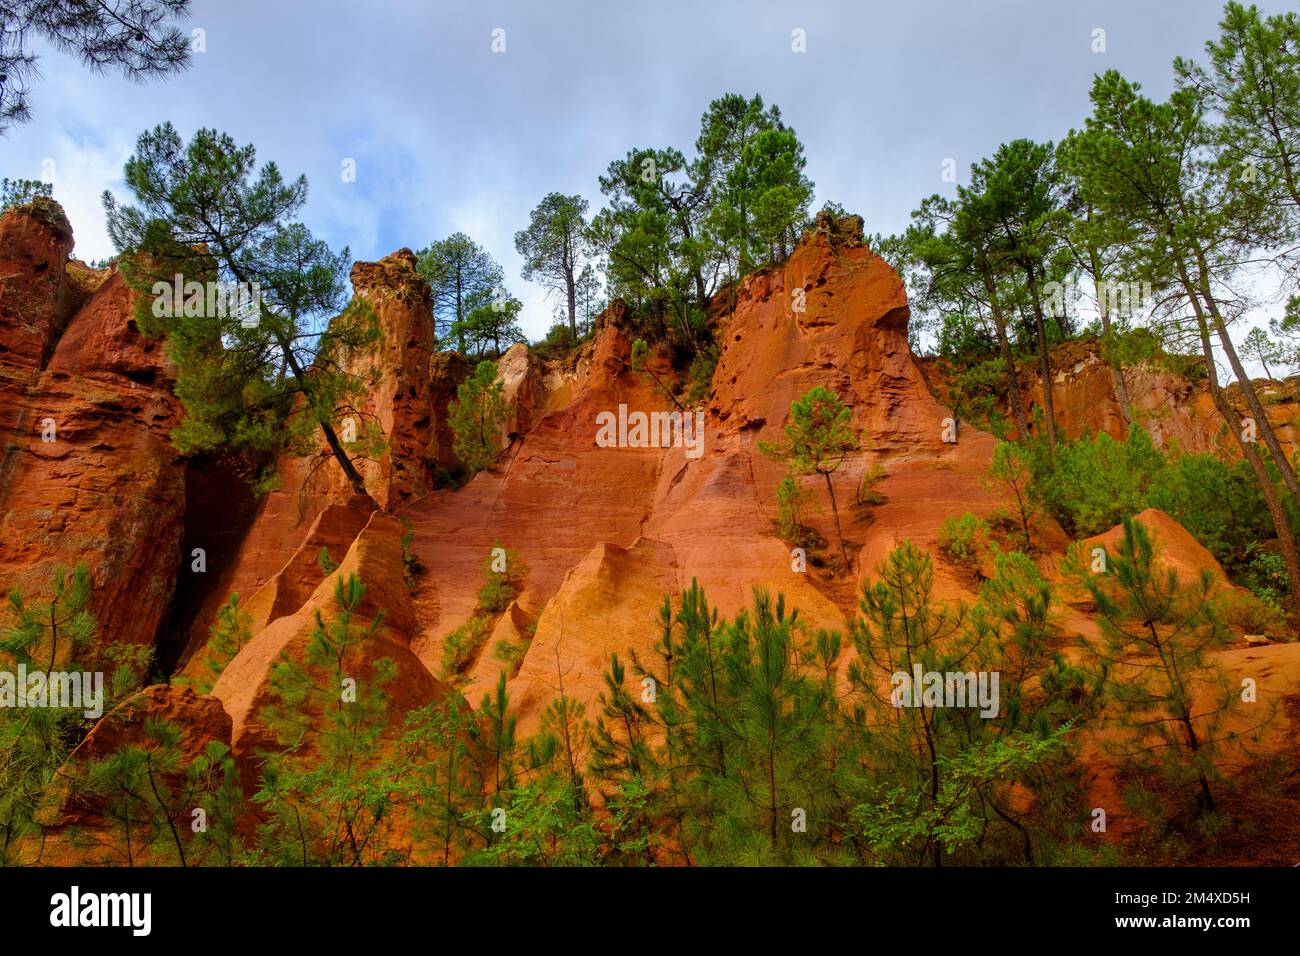 France, Provence-Alpes-Cote dAzur, Ochre cliffs in Le Sentier des Ocres quarry Stock Photo